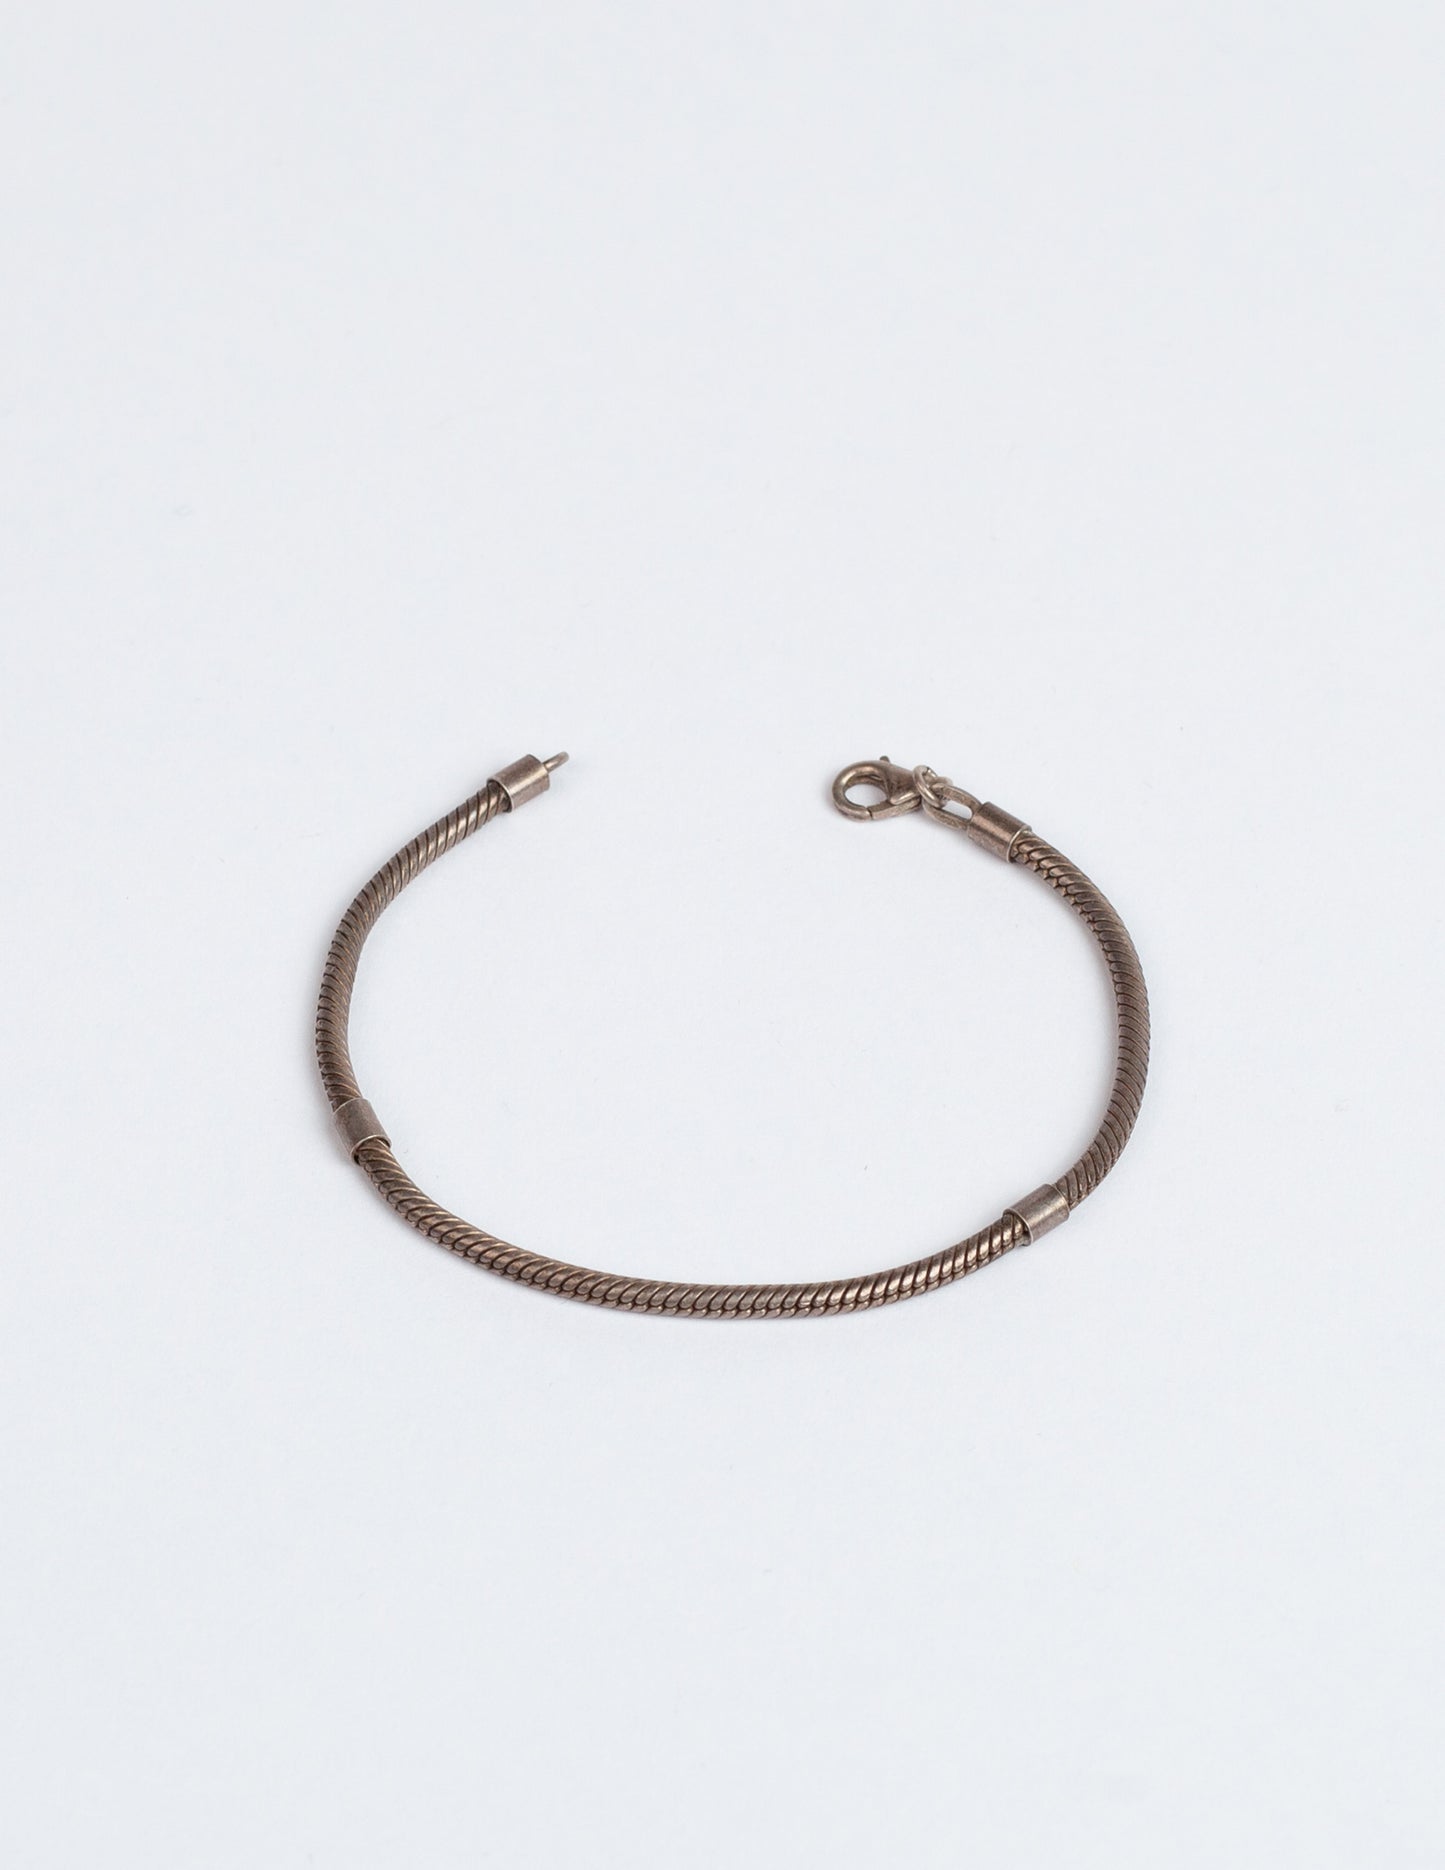 Vintage Sterling Silver Rope Bracelet